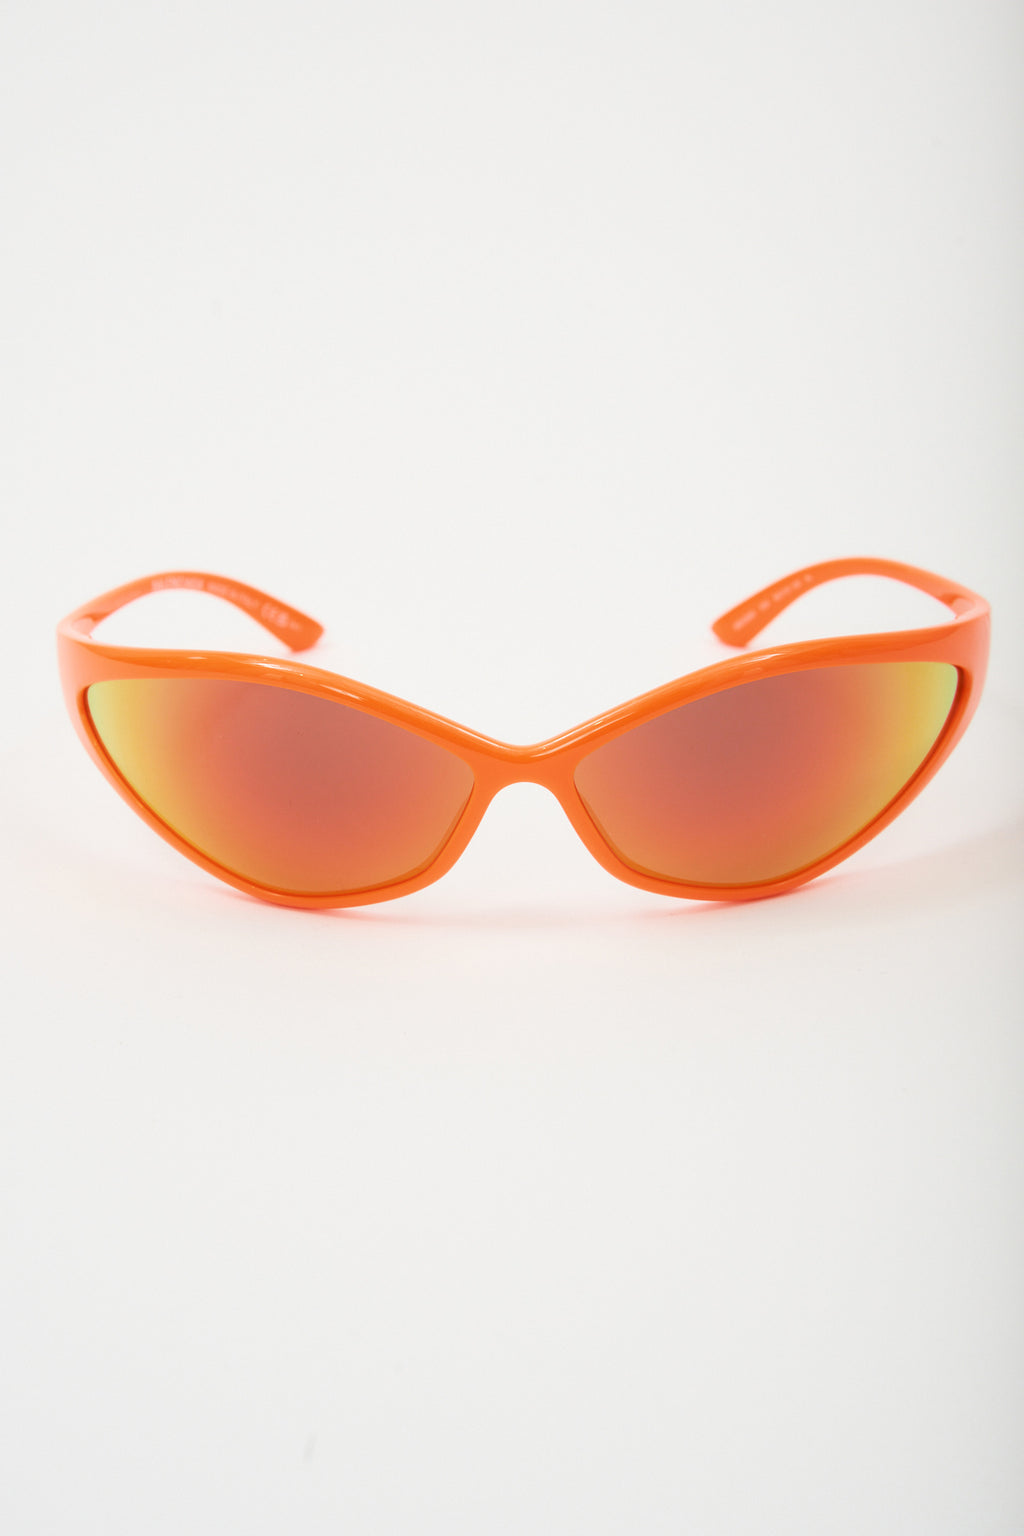 90s Oval Orange Sunglasses